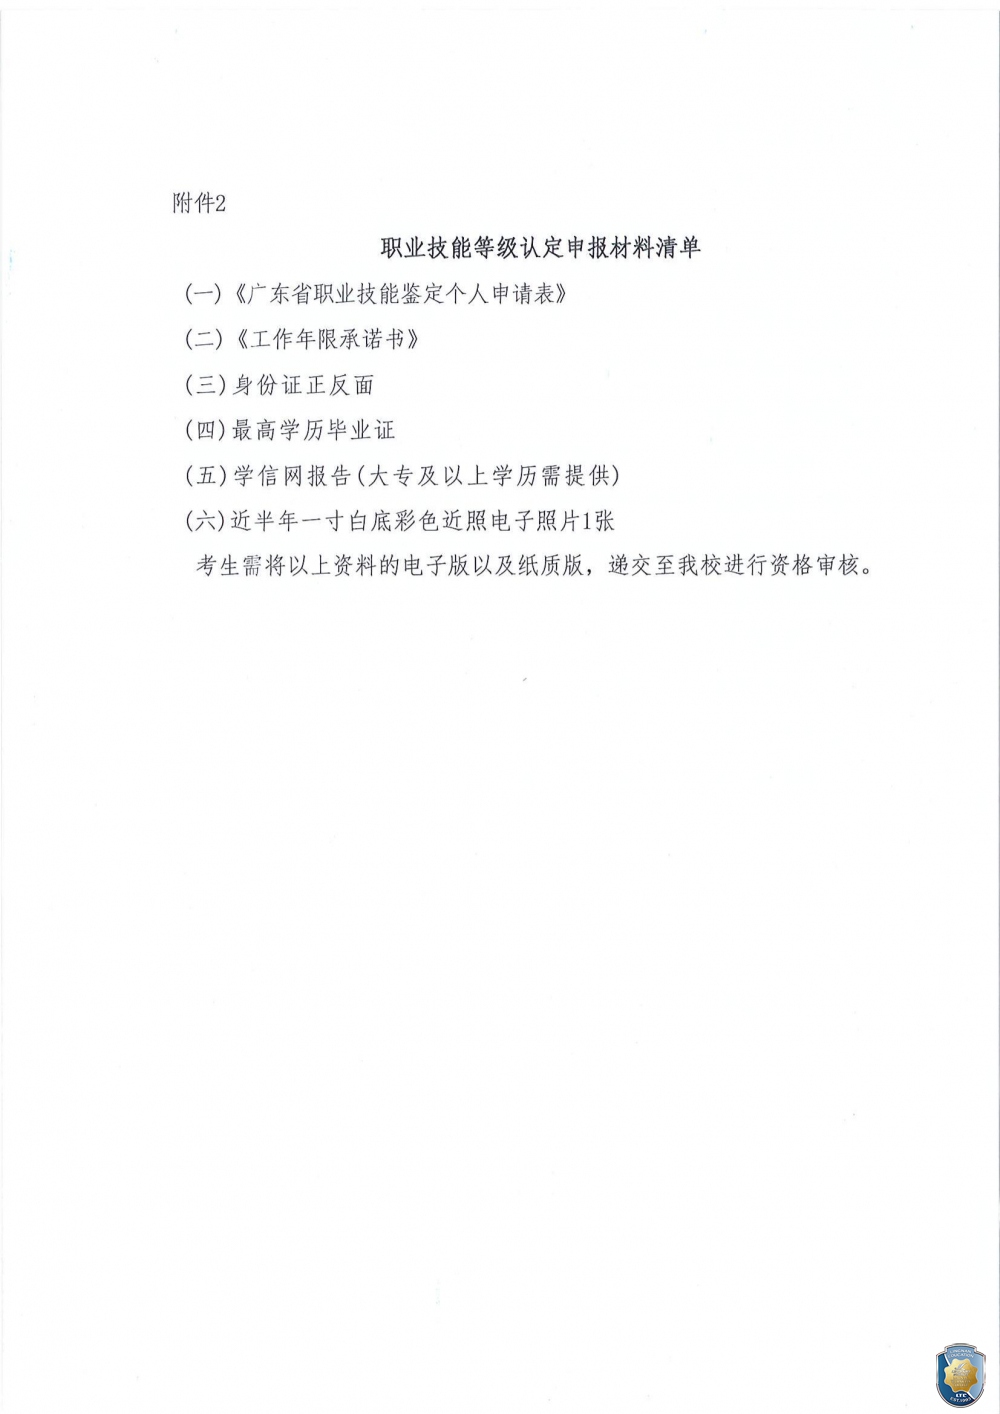 广东岭南现代技师学院2023年5月职业技能等级认定公告_05